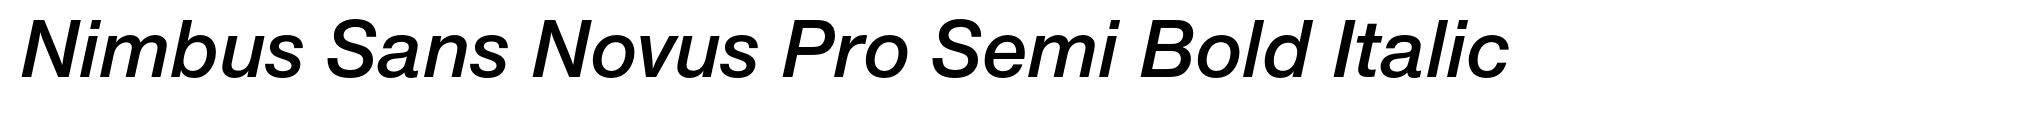 Nimbus Sans Novus Pro Semi Bold Italic image